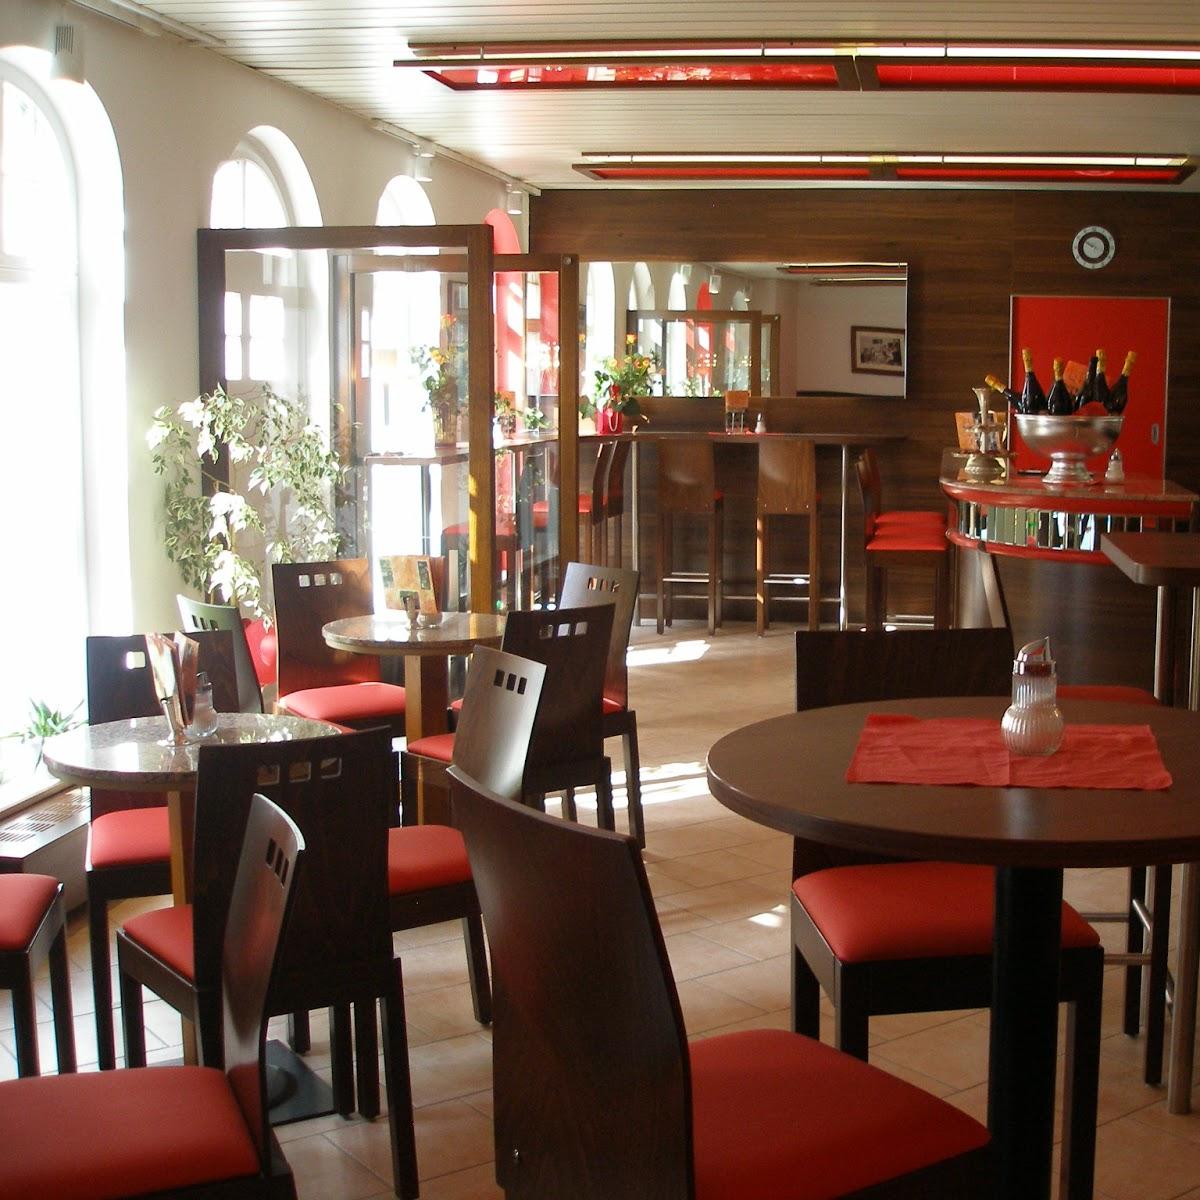 Restaurant "Eiscafé La Piazza" in Gunzenhausen